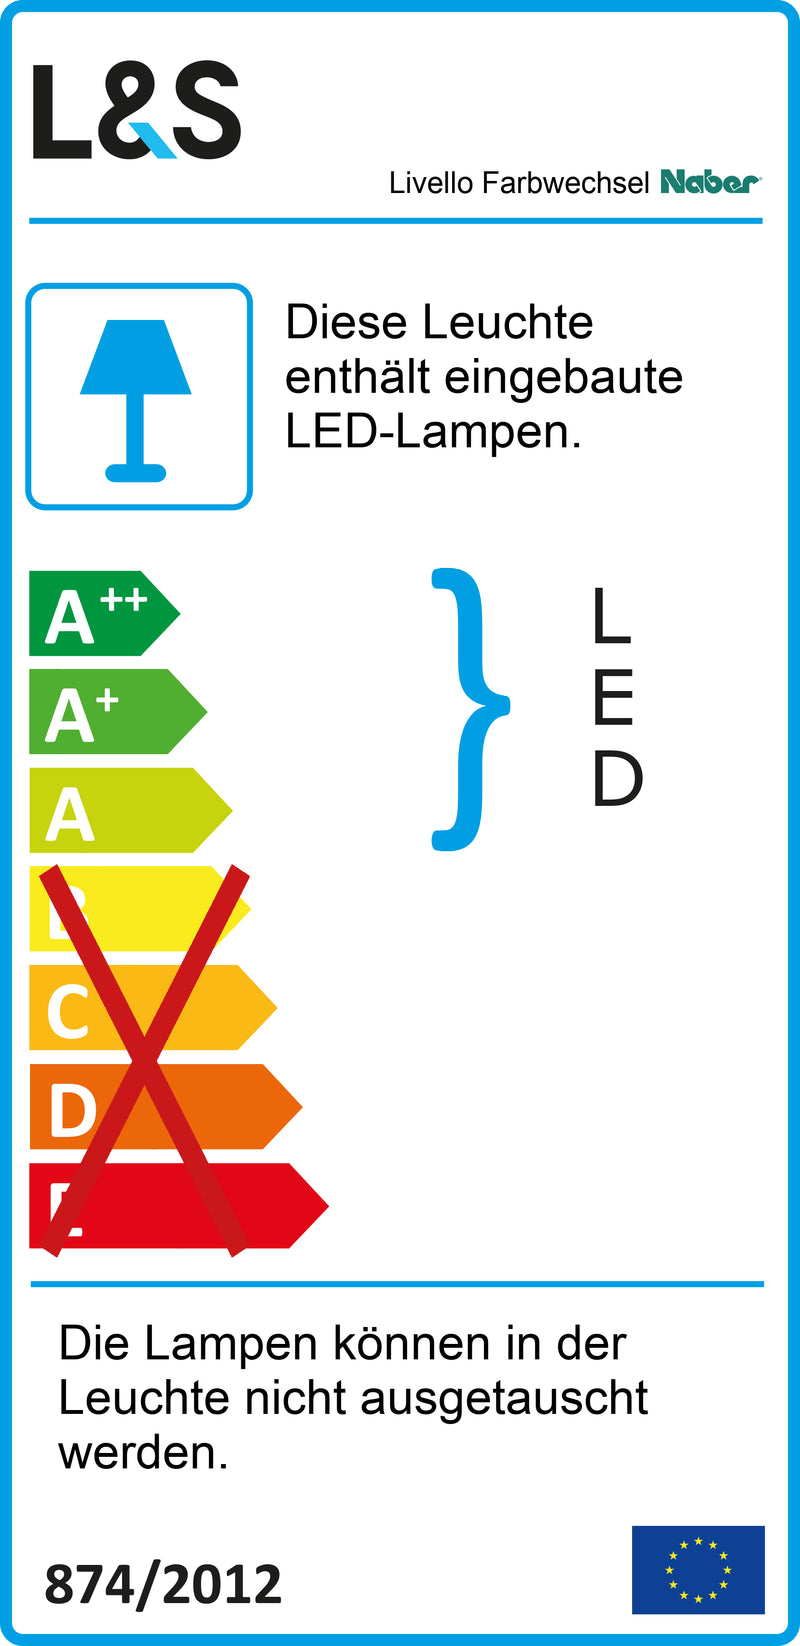 E-Label zu Zeichnung zu Livello Farbwechsel LED als Variante Einzelleuchte ohne Schalter, LIC LED-System kompatibel, alufarbig von Naber GmbH in der Kategorie Lichttechnik in Österreich auf conceptshop.at